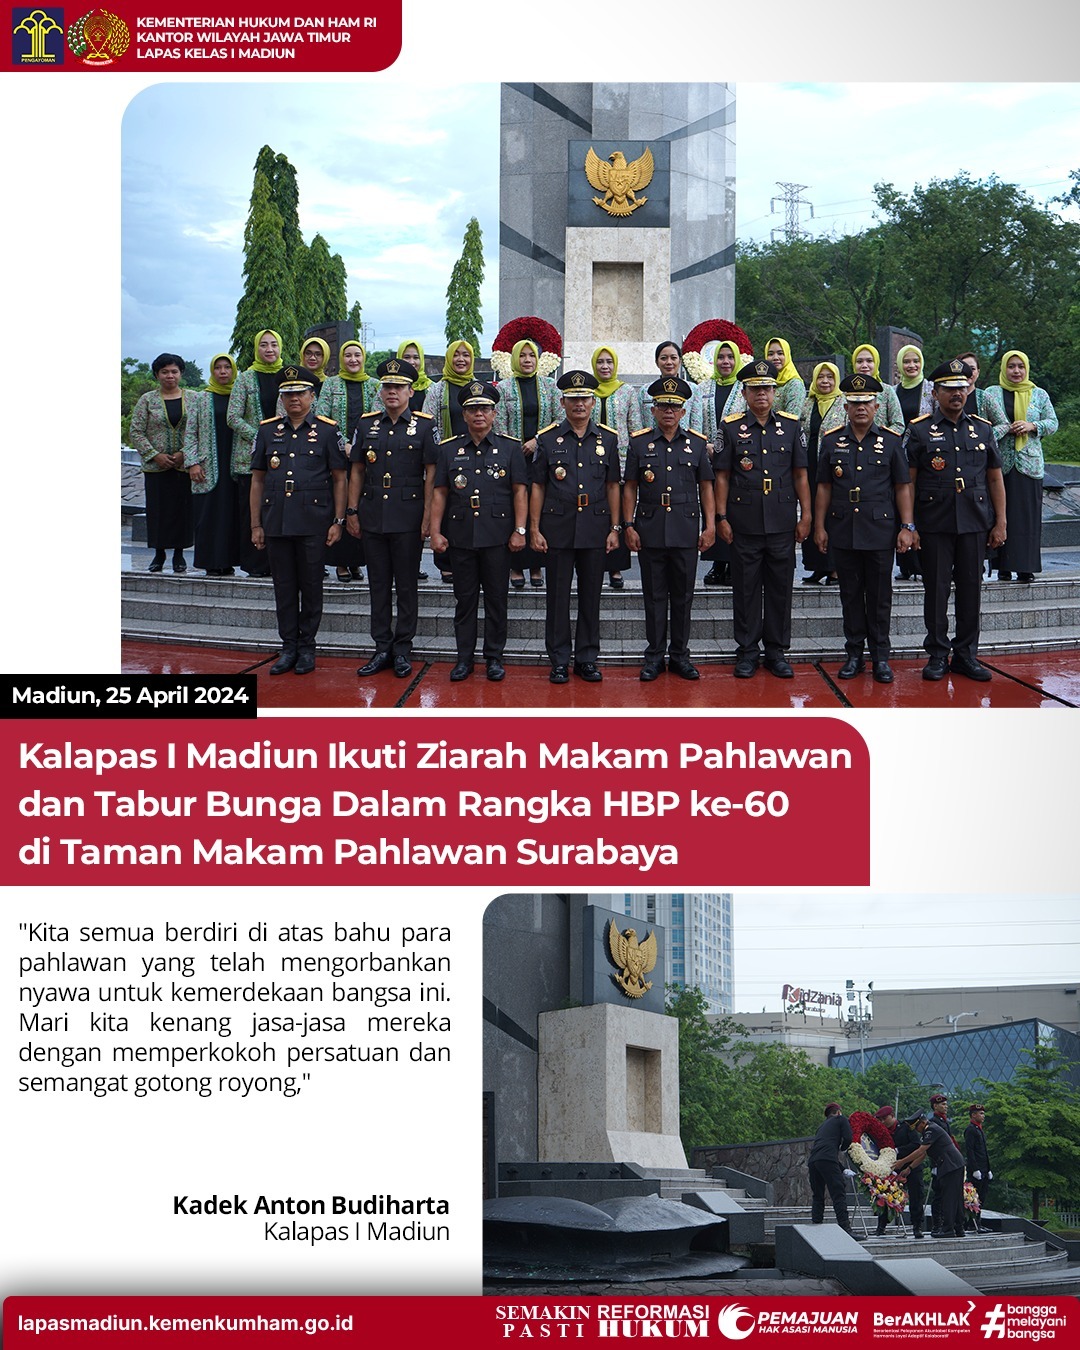 Kalapas I Madiun Ikuti Ziarah Makam Pahlawan dan Tabur Bunga Dalam Rangka HBP ke-60 di Taman Makam Pahlawan Surabaya